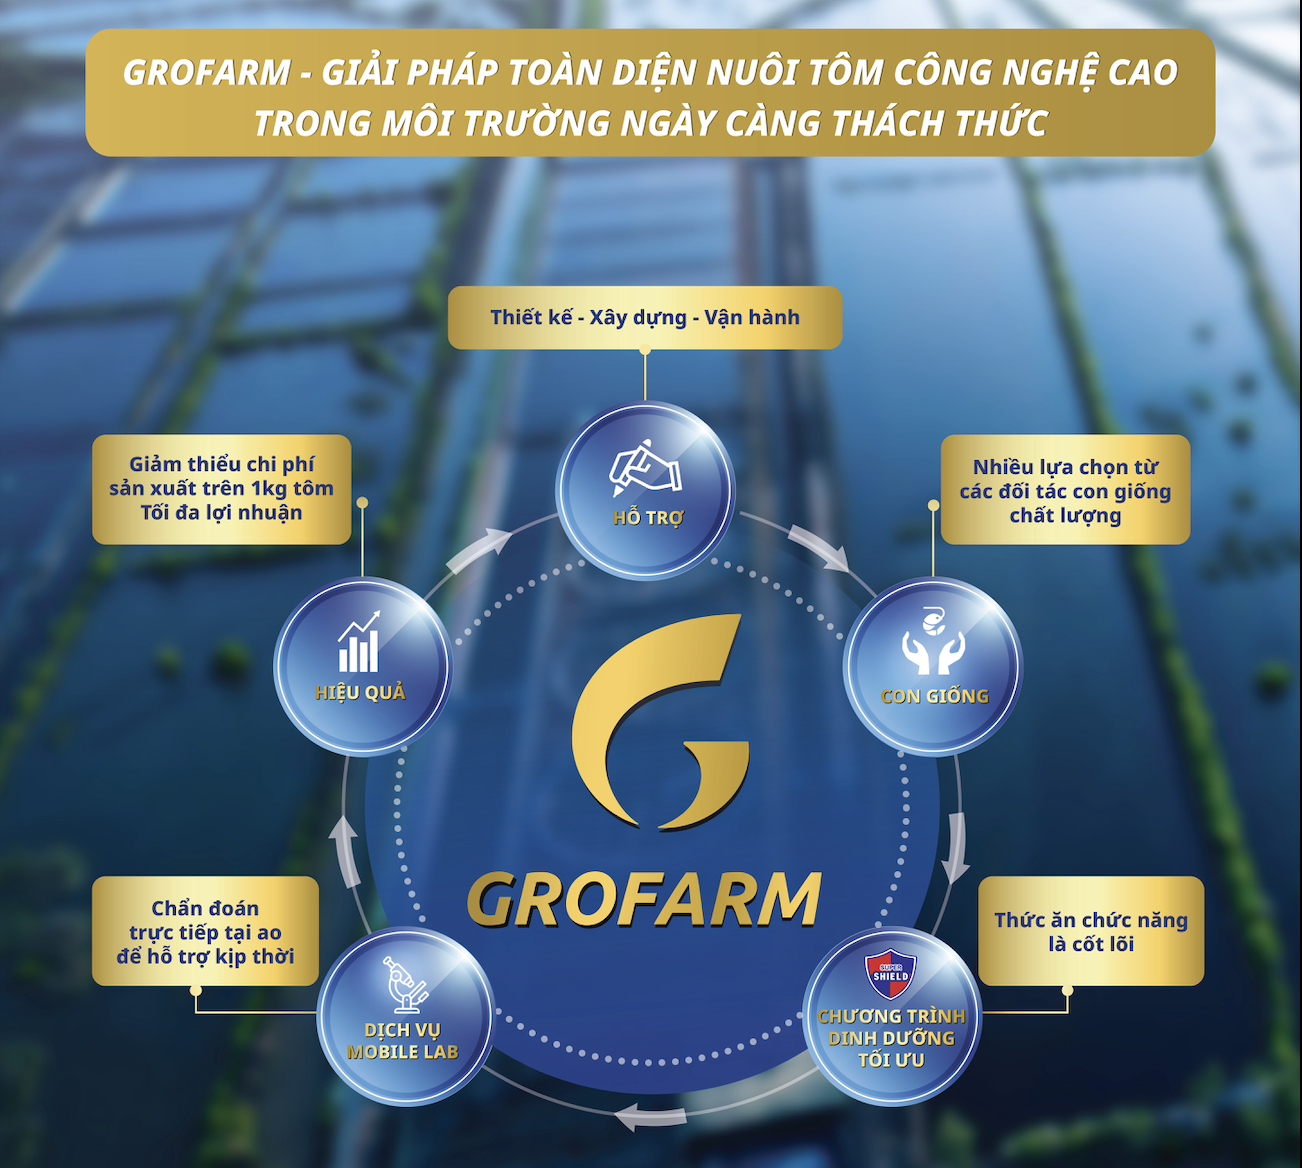 GROFARM - một giải pháp toàn diện nuôi tôm công nghệ cao trong môi trường ngày càng thách thức của Công ty GROBEST.